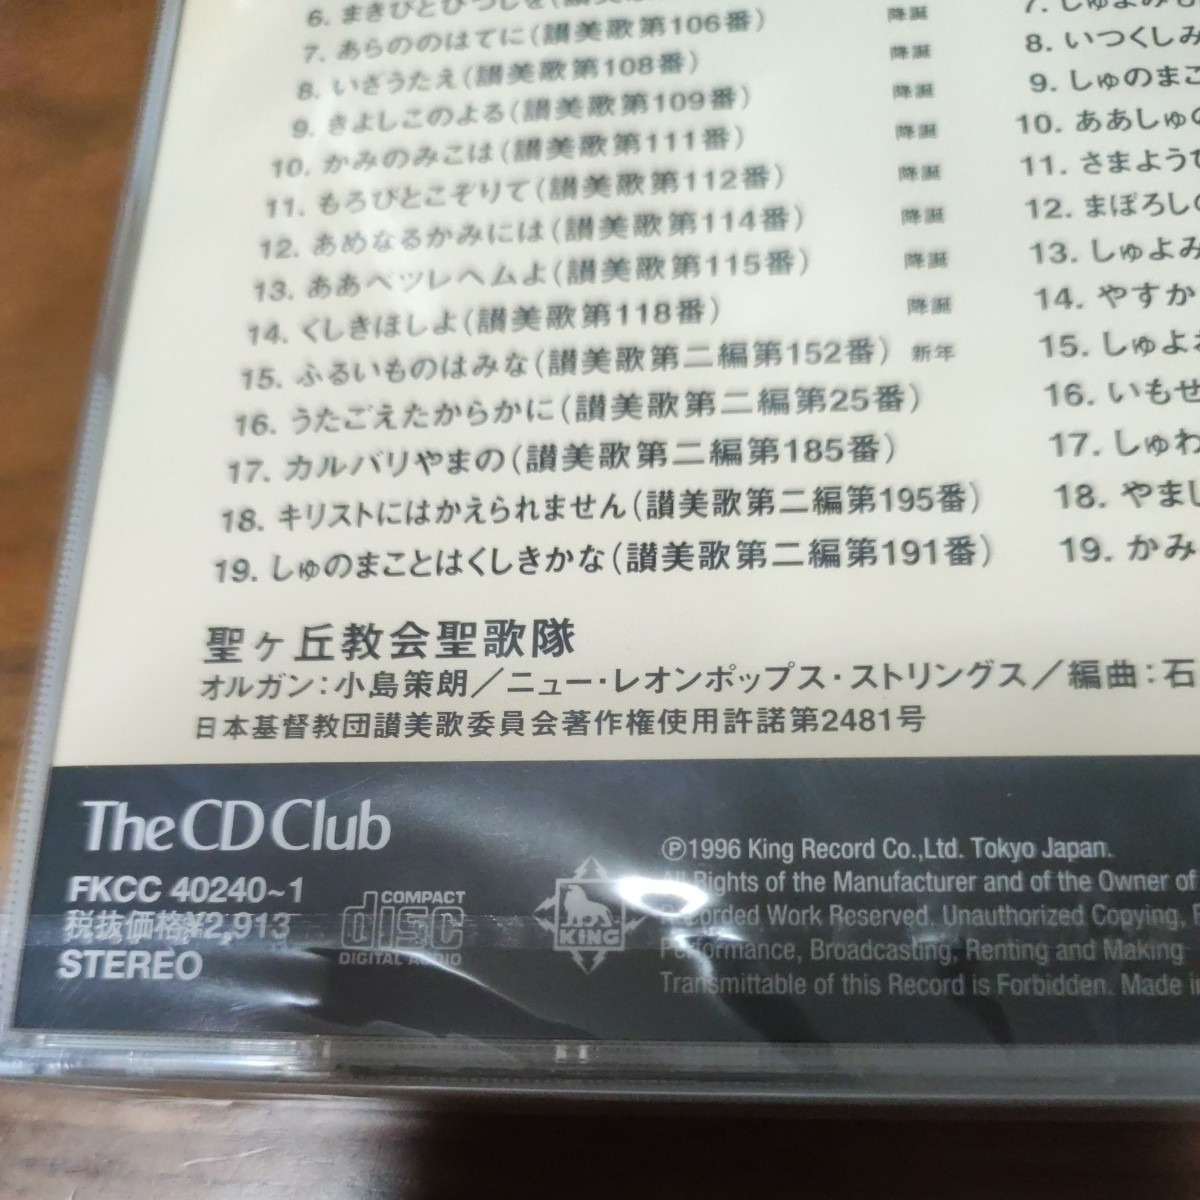 新品 未開封品 CD ２CD 讃美歌名曲集 The CD Club FKCC 40240-1_画像5